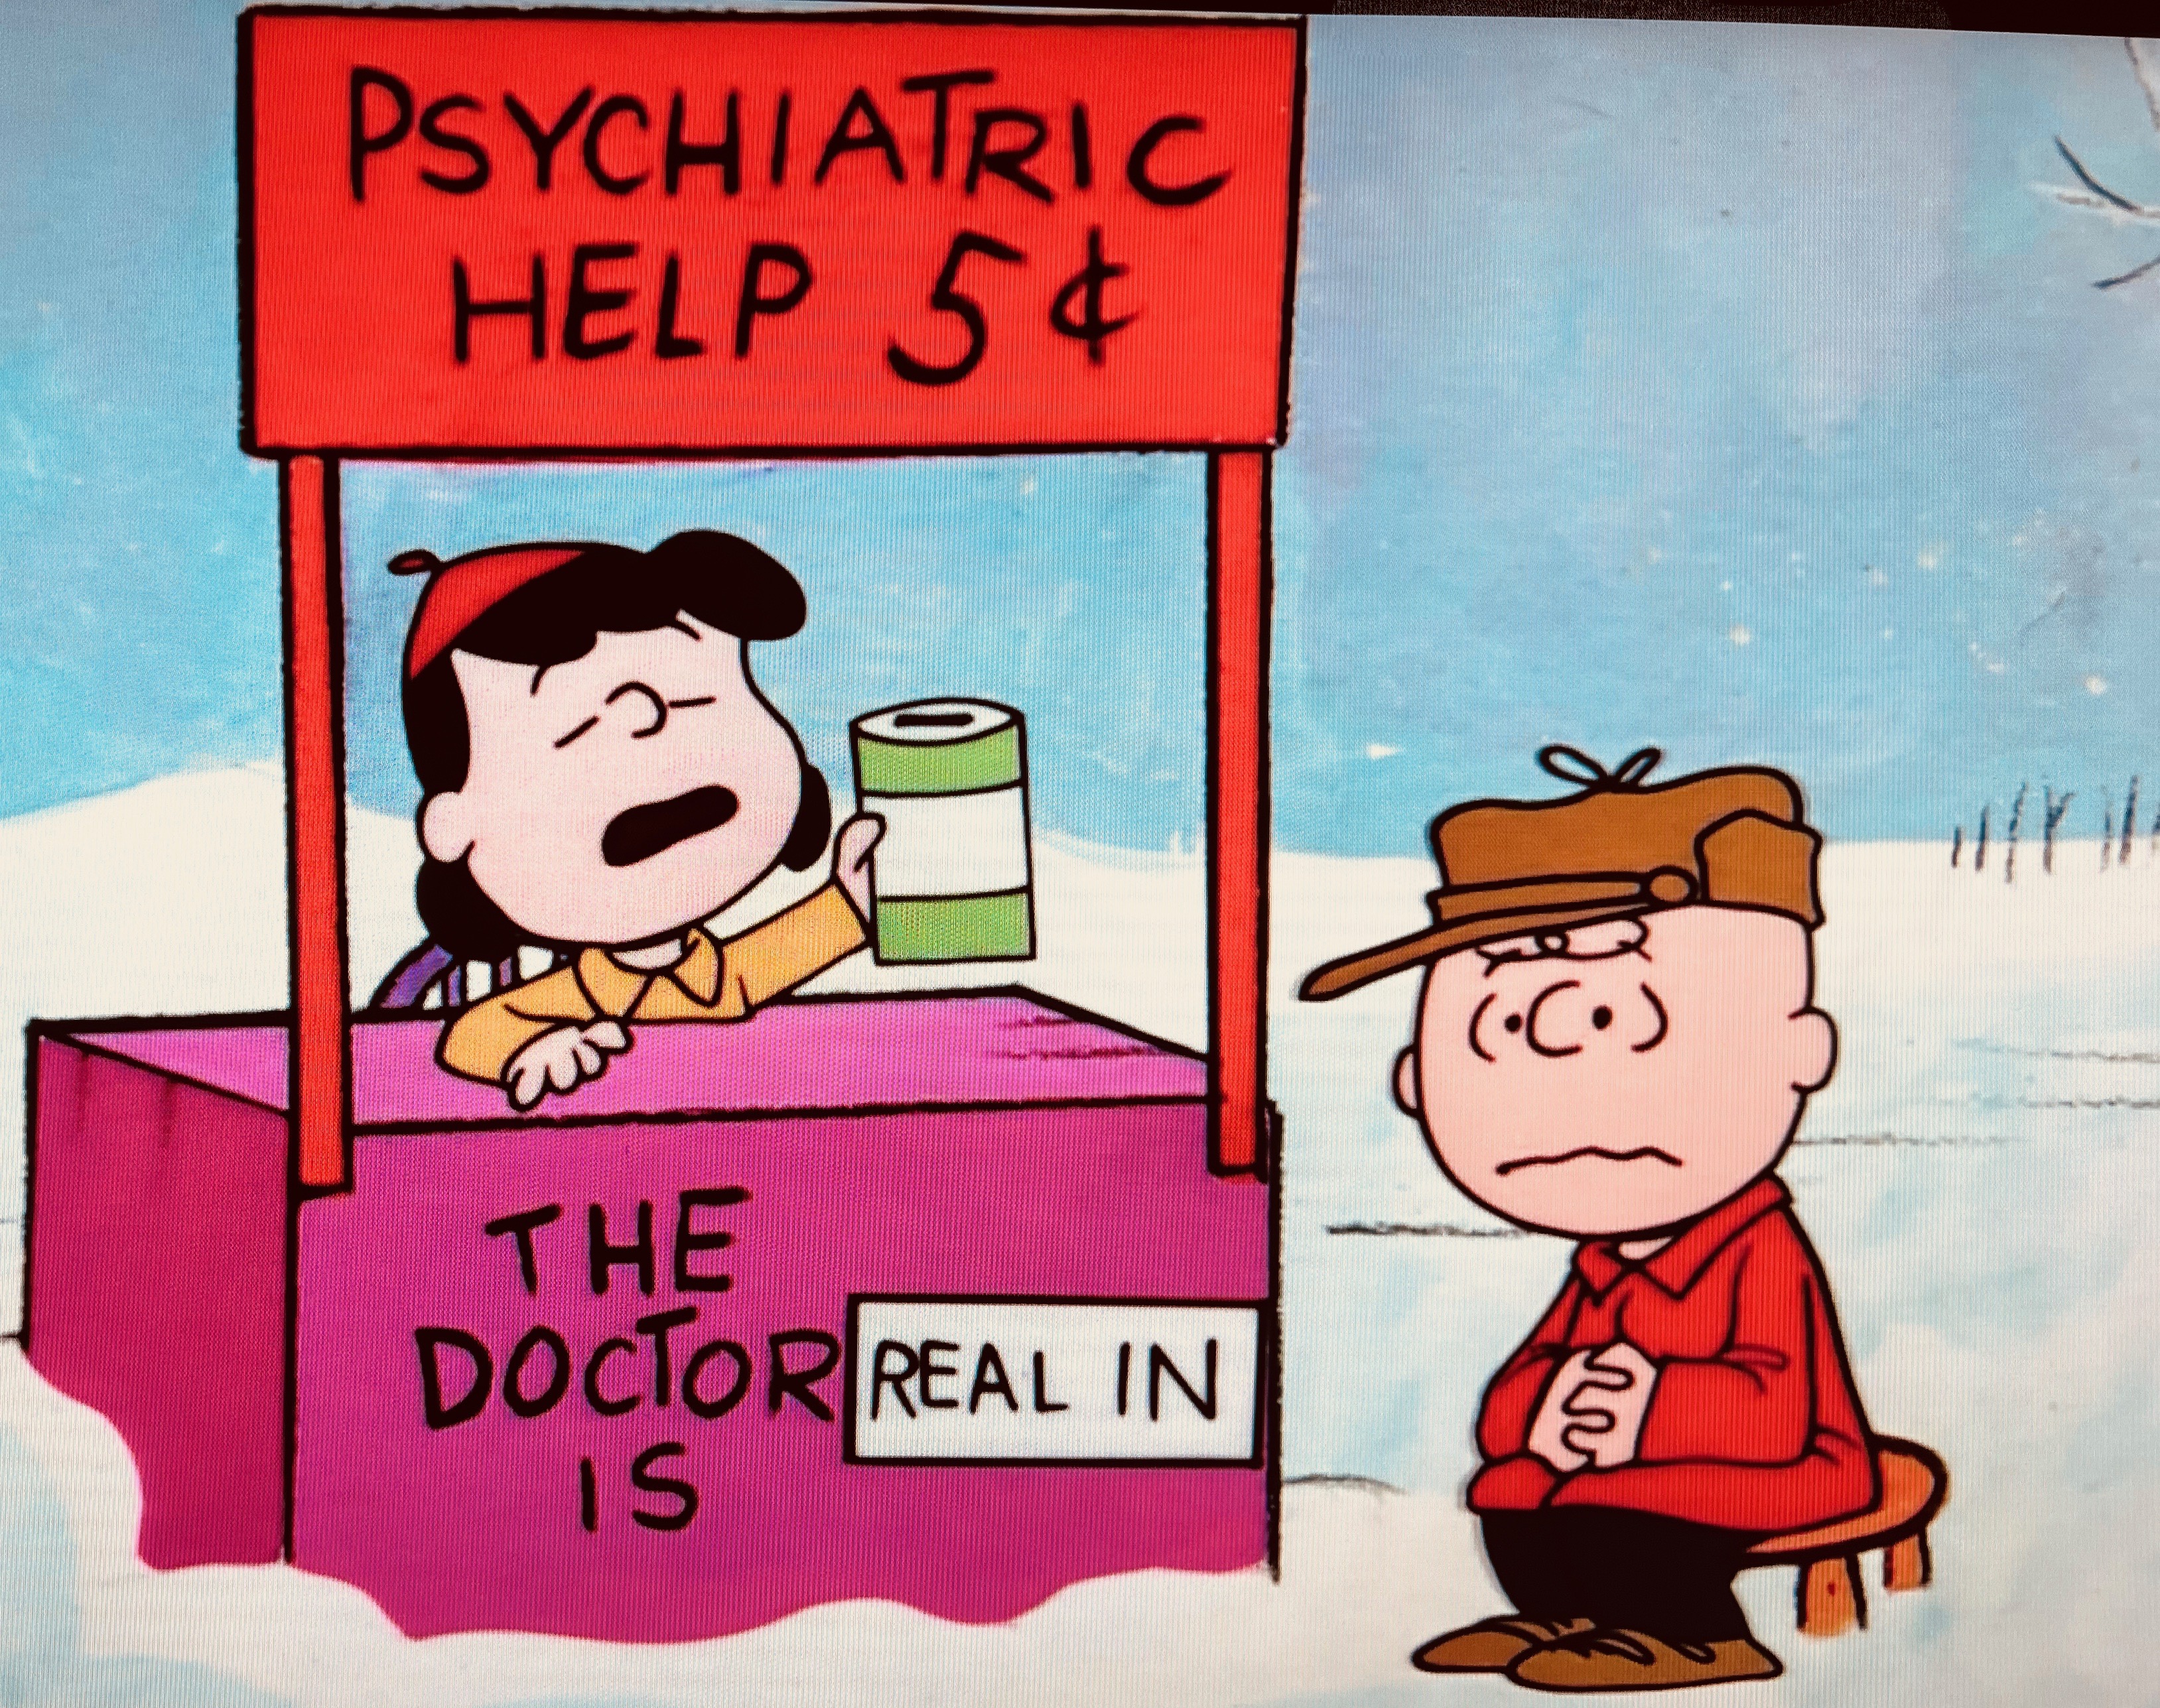 peanuts-psychiatric-help-5-cents-charles-schulz-Peanuts®